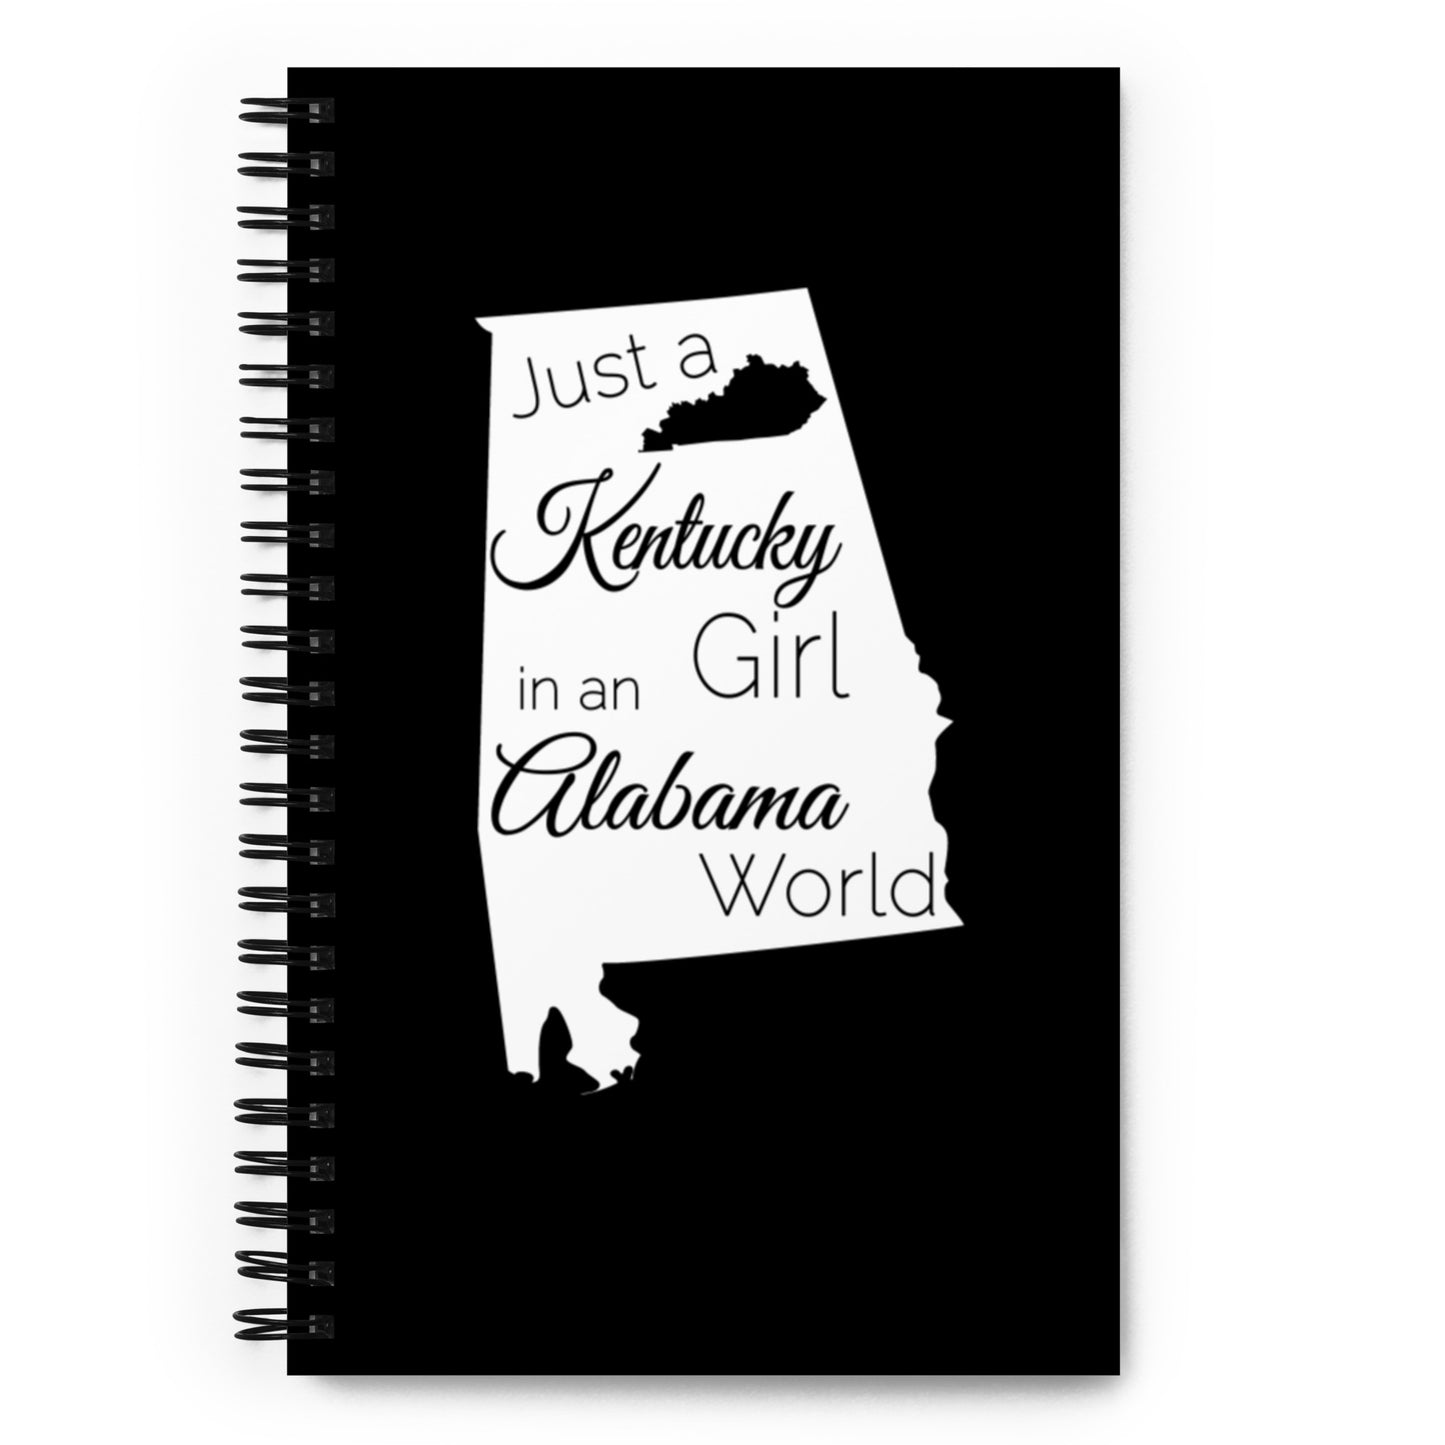 Just a Kentucky Girl in an Alabama World Spiral notebook